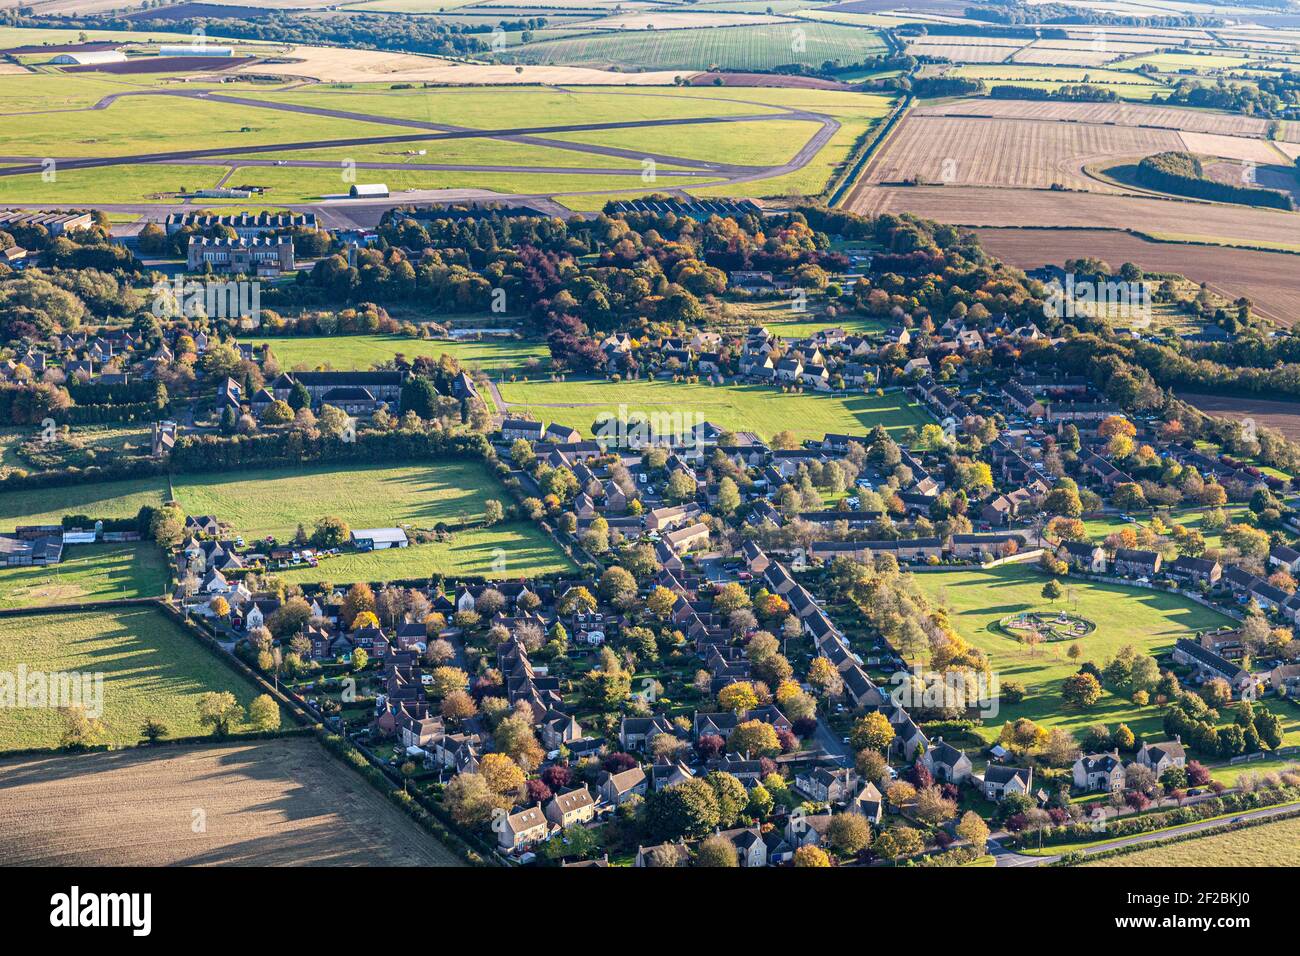 Eine Luftaufnahme des Cotswold-Dorfes Upper Rissington, Gloucestershire, UK - Little Rissington Airfield ist im Hintergrund zu sehen. Stockfoto